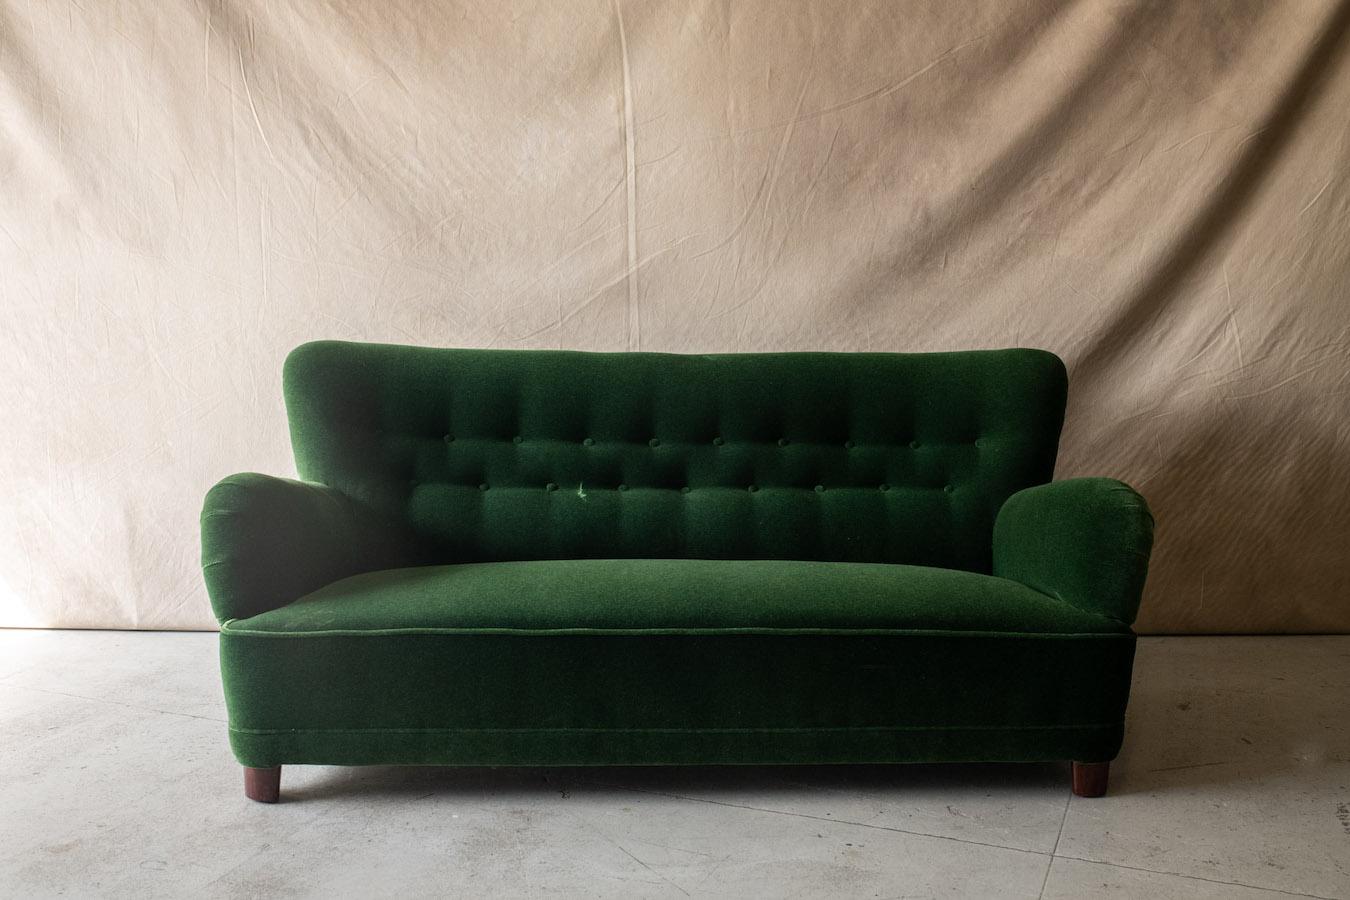 Vintage Danish Cabinetmaker Sofa in Mohair/Velour Stoff, um 1950.  Fantastische Qualität und Design.  Gepolstert mit einem grünen Mohair-Samtstoff.  

Wir haben nicht die Zeit, zu jedem unserer Stücke eine ausführliche Beschreibung zu schreiben. Wir